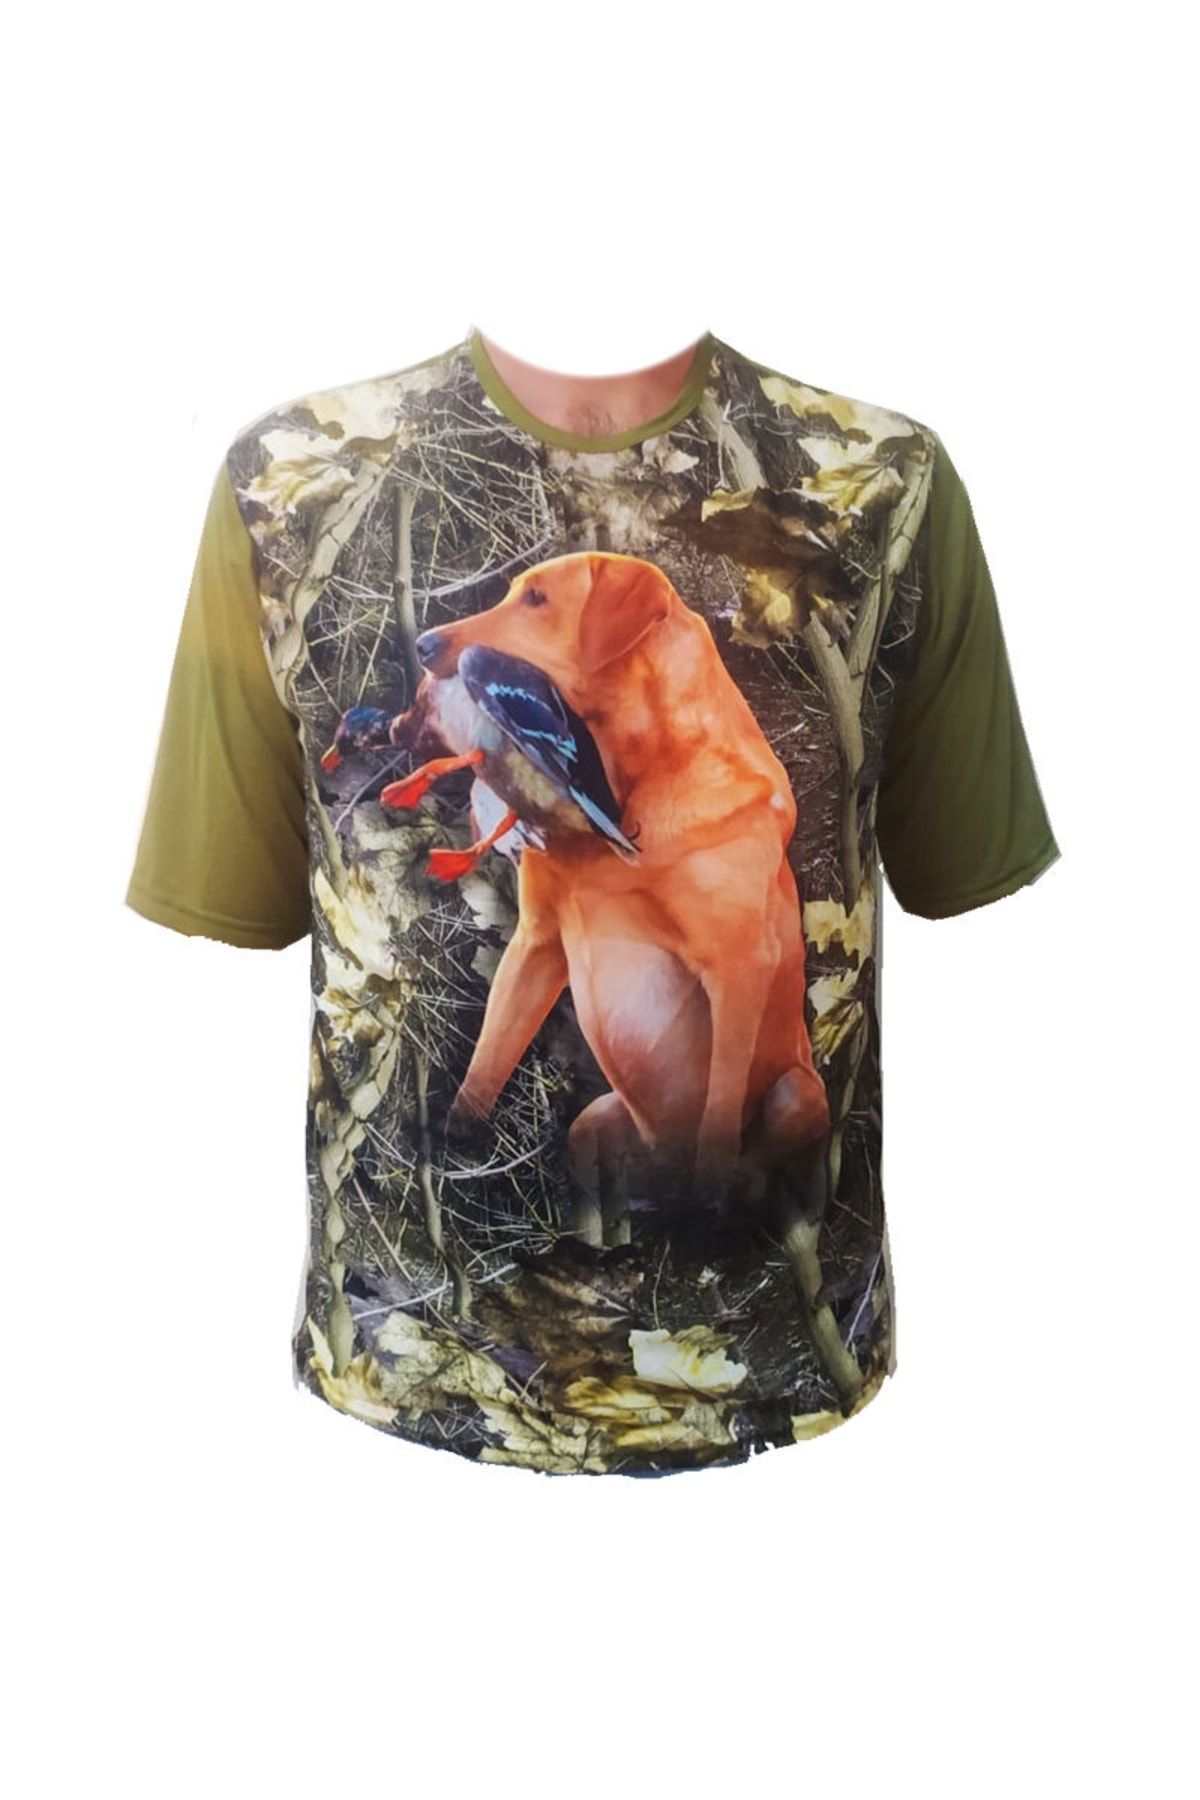 ALDOS Kısa Kol Sazlık Desenli Kırmızı Köpekli Ördekli Avcı Ve Outdoor T-shirt